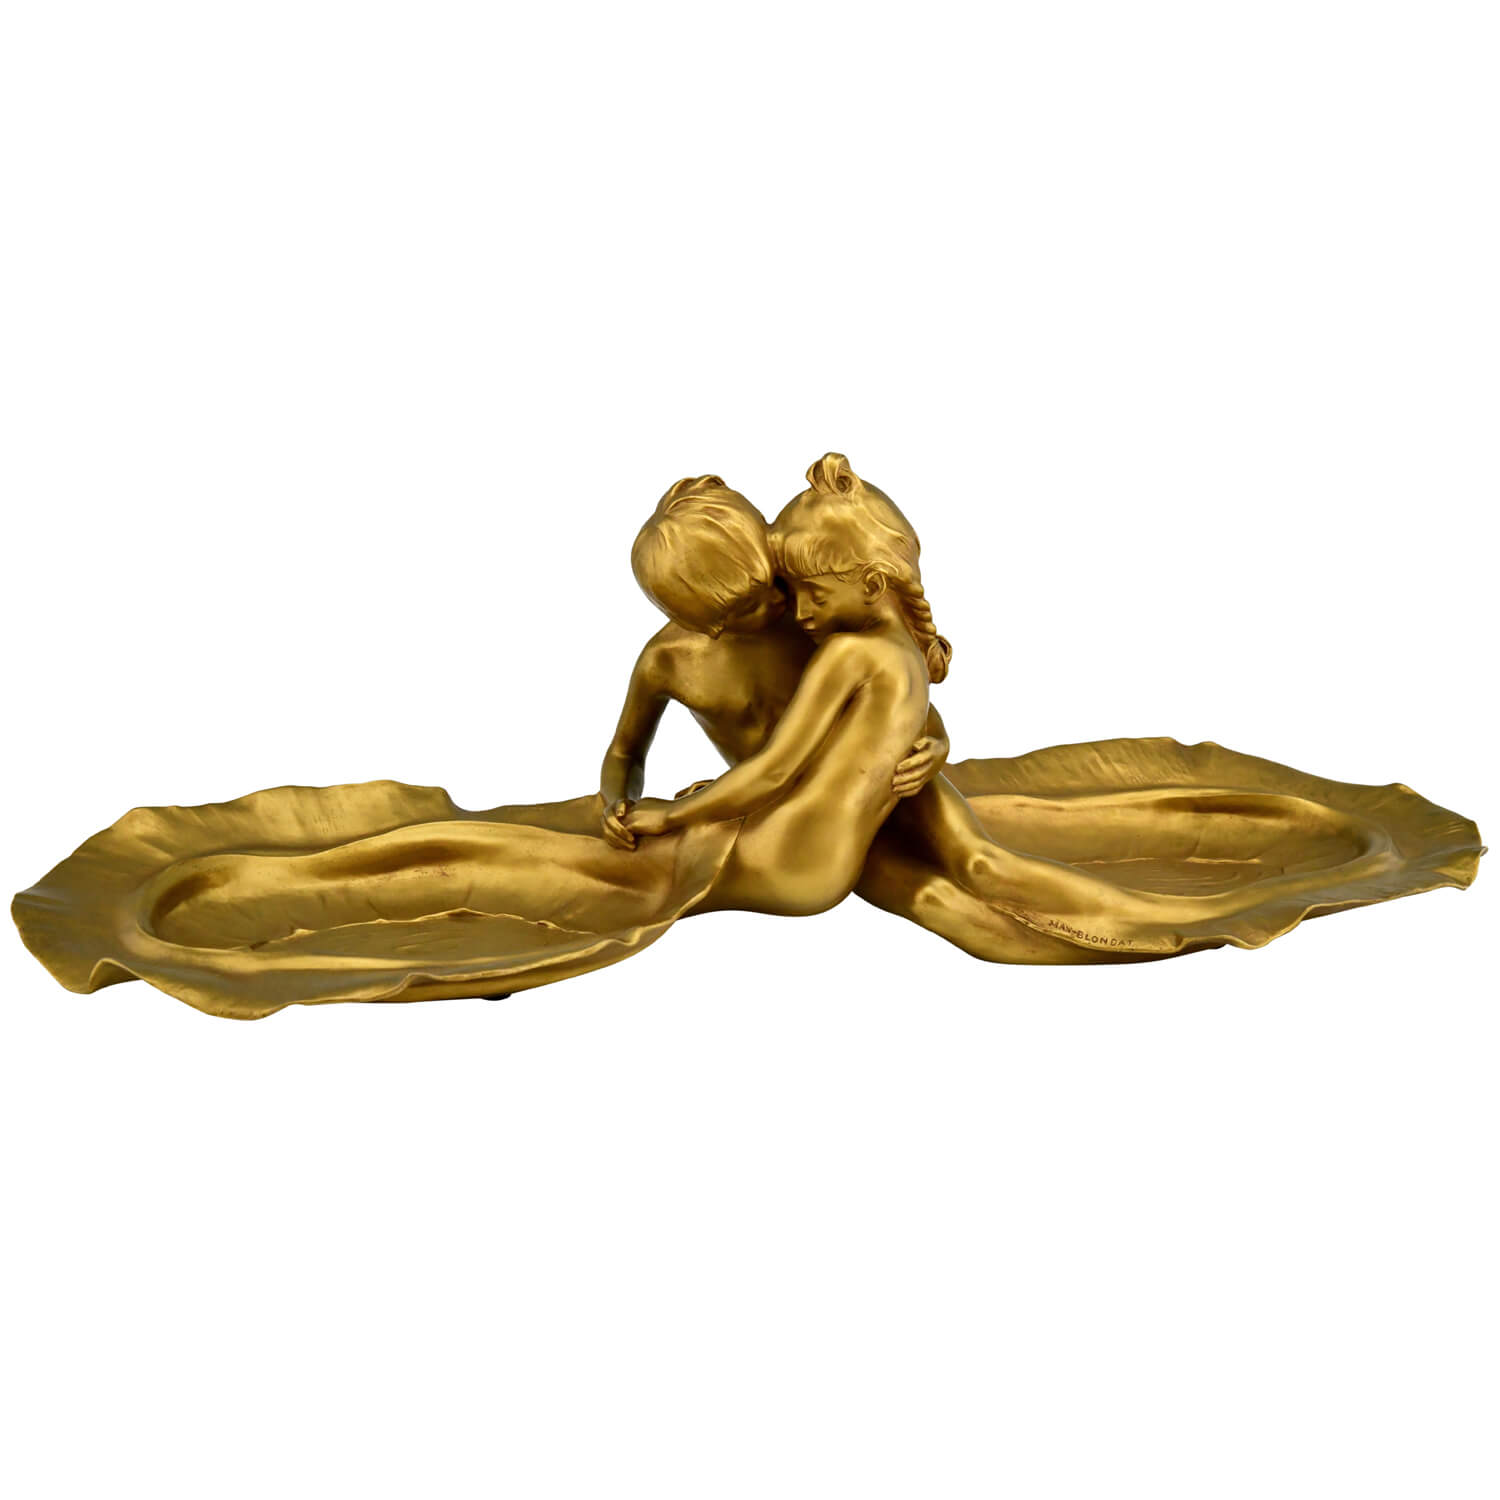 Blondat Art Nouveau bronze tray nude couple - 2